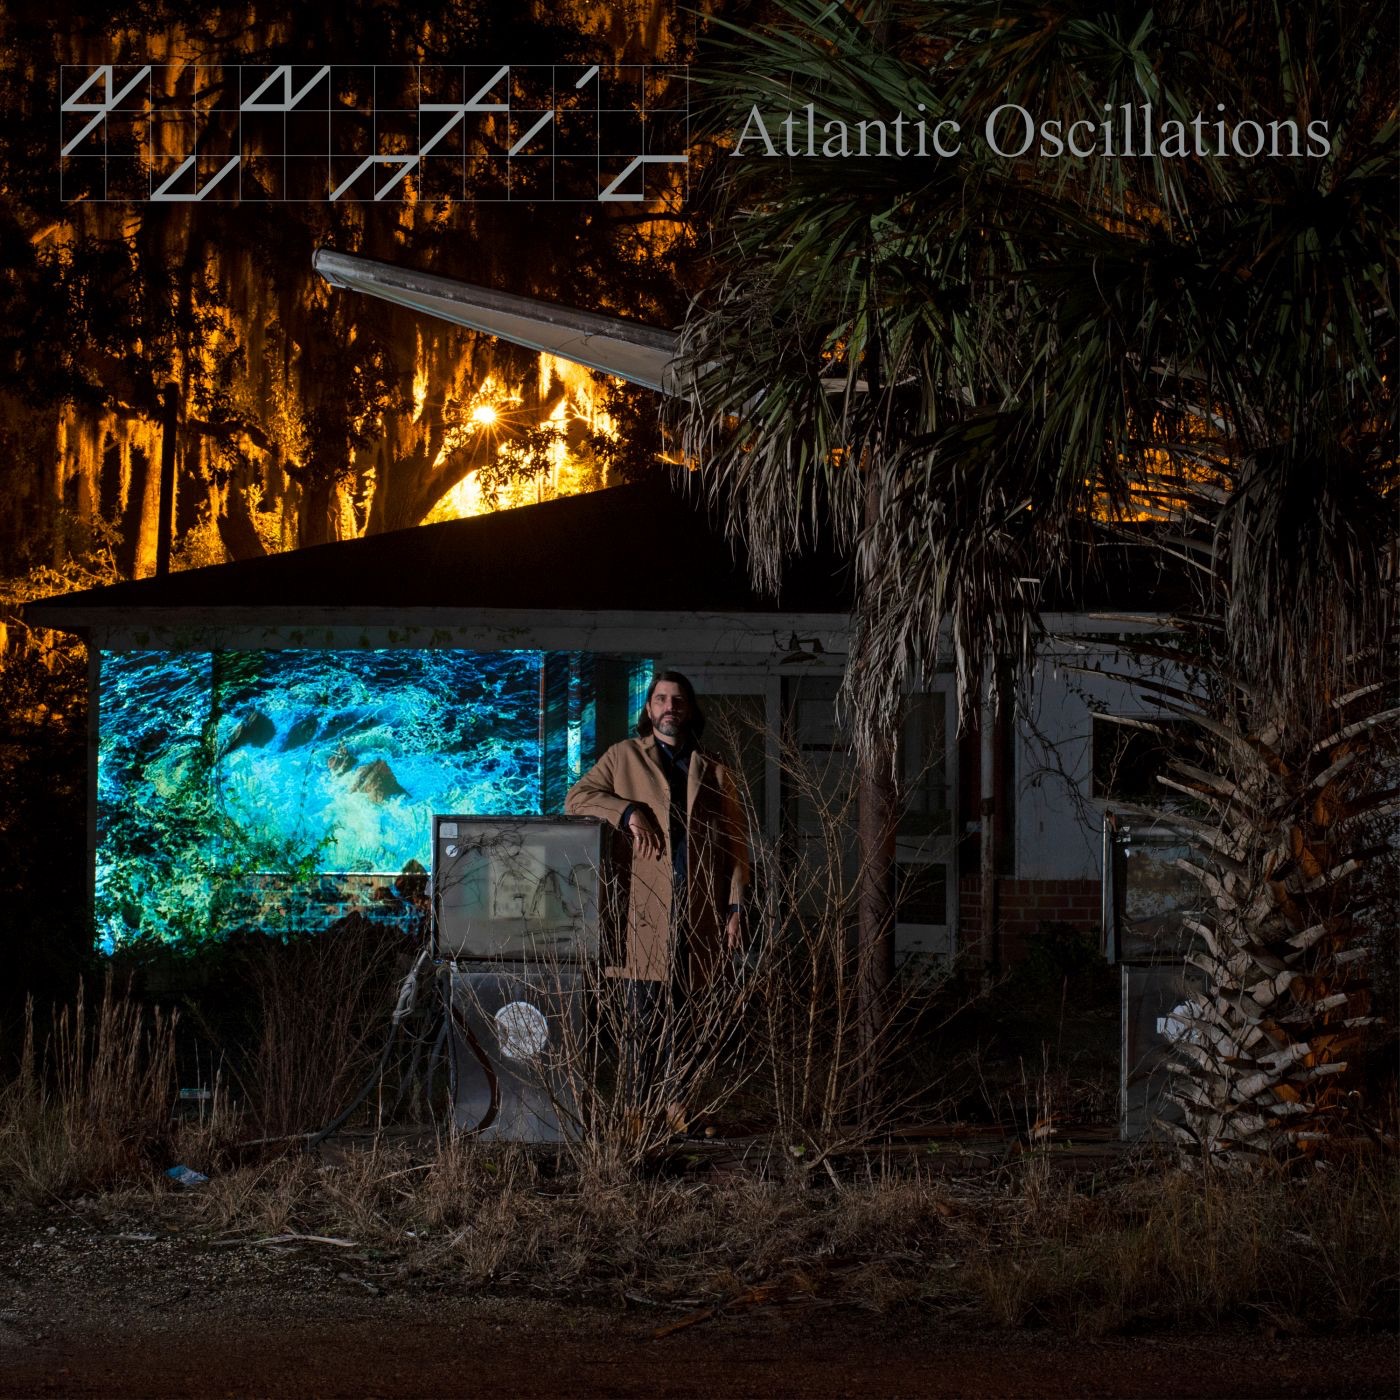 Atlantic Oscillations by Quantic, Atlantic Oscillations